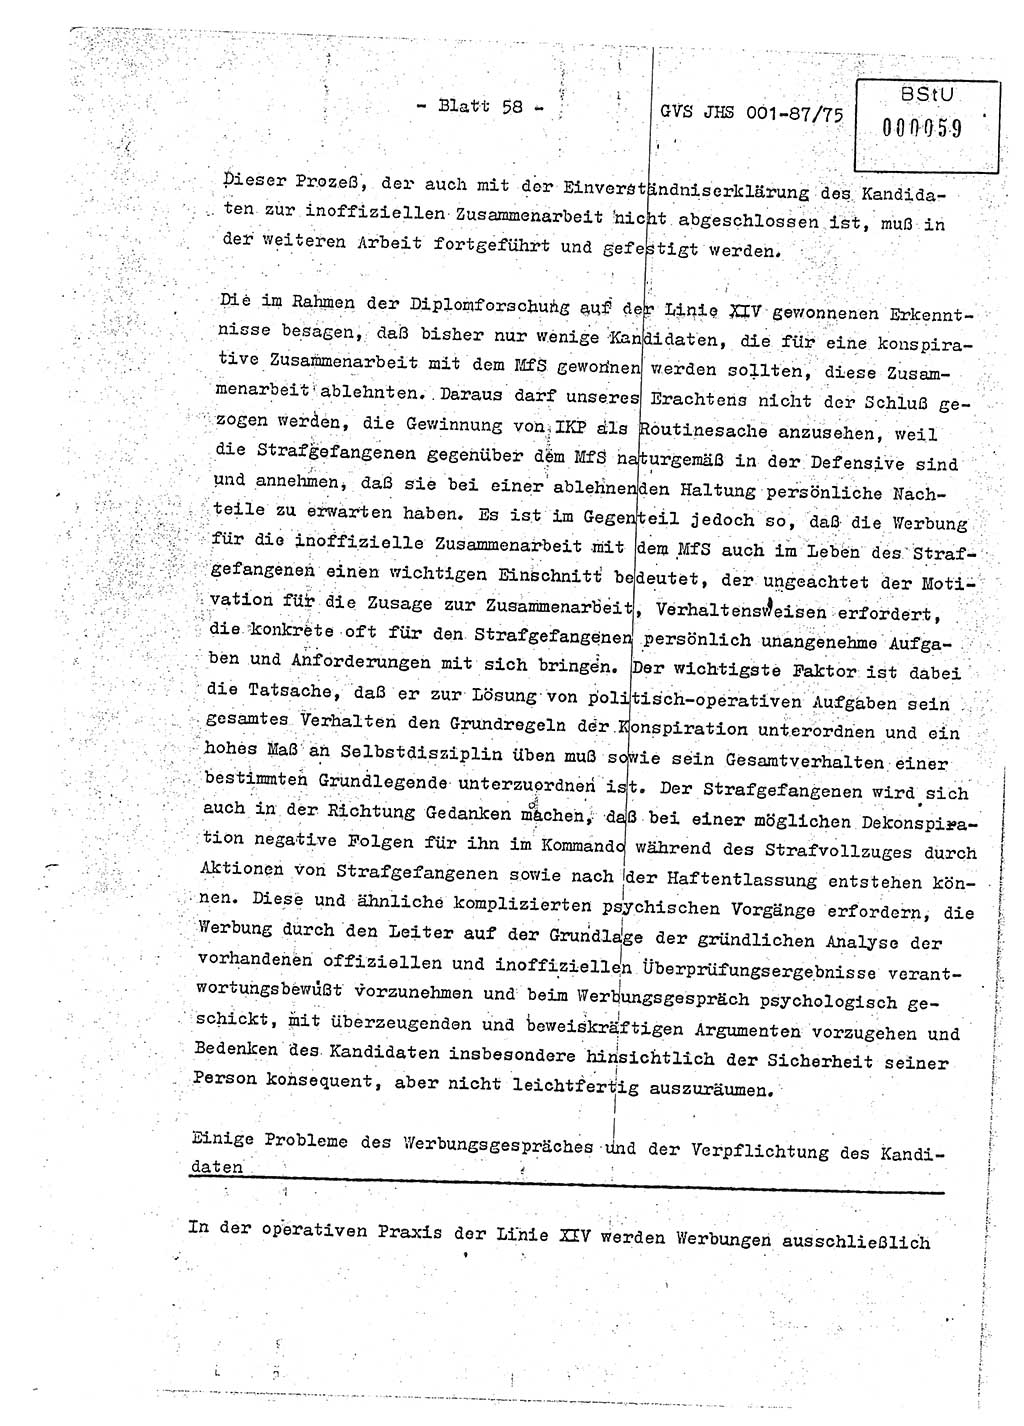 Diplomarbeit Hauptmann Volkmar Heinz (Abt. ⅩⅣ), Oberleutnant Lothar Rüdiger (BV Lpz. Abt. Ⅺ), Ministerium für Staatssicherheit (MfS) [Deutsche Demokratische Republik (DDR)], Juristische Hochschule (JHS), Geheime Verschlußsache (GVS) o001-87/75, Potsdam 1975, Seite 58 (Dipl.-Arb. MfS DDR JHS GVS o001-87/75 1975, S. 58)